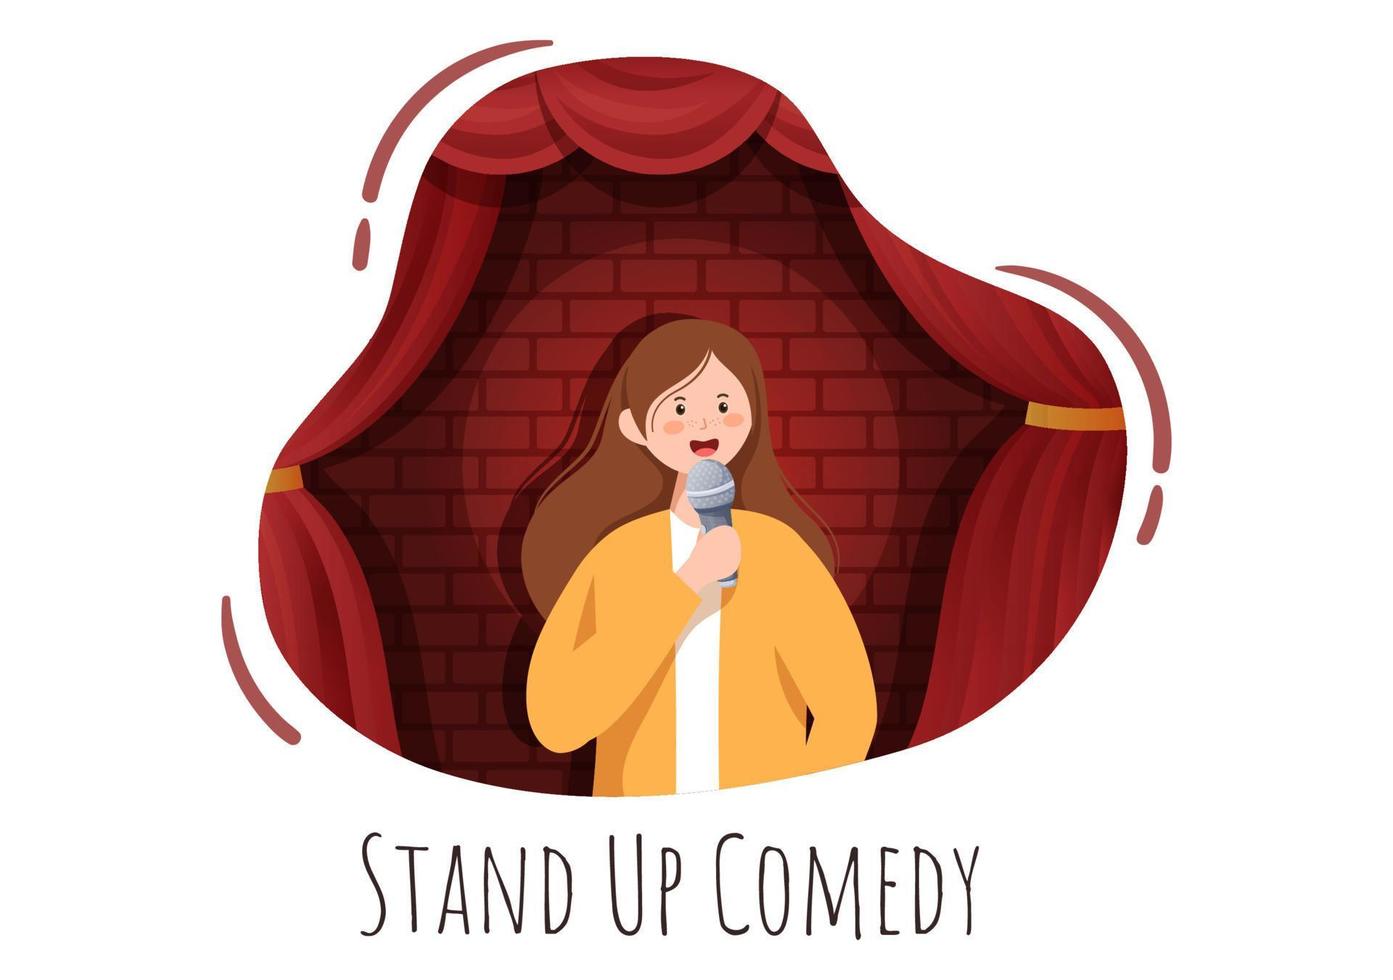 cena de teatro show de comédia stand up com cortinas vermelhas e microfone aberto para comediante se apresentando no palco em ilustração de desenho animado estilo simples vetor